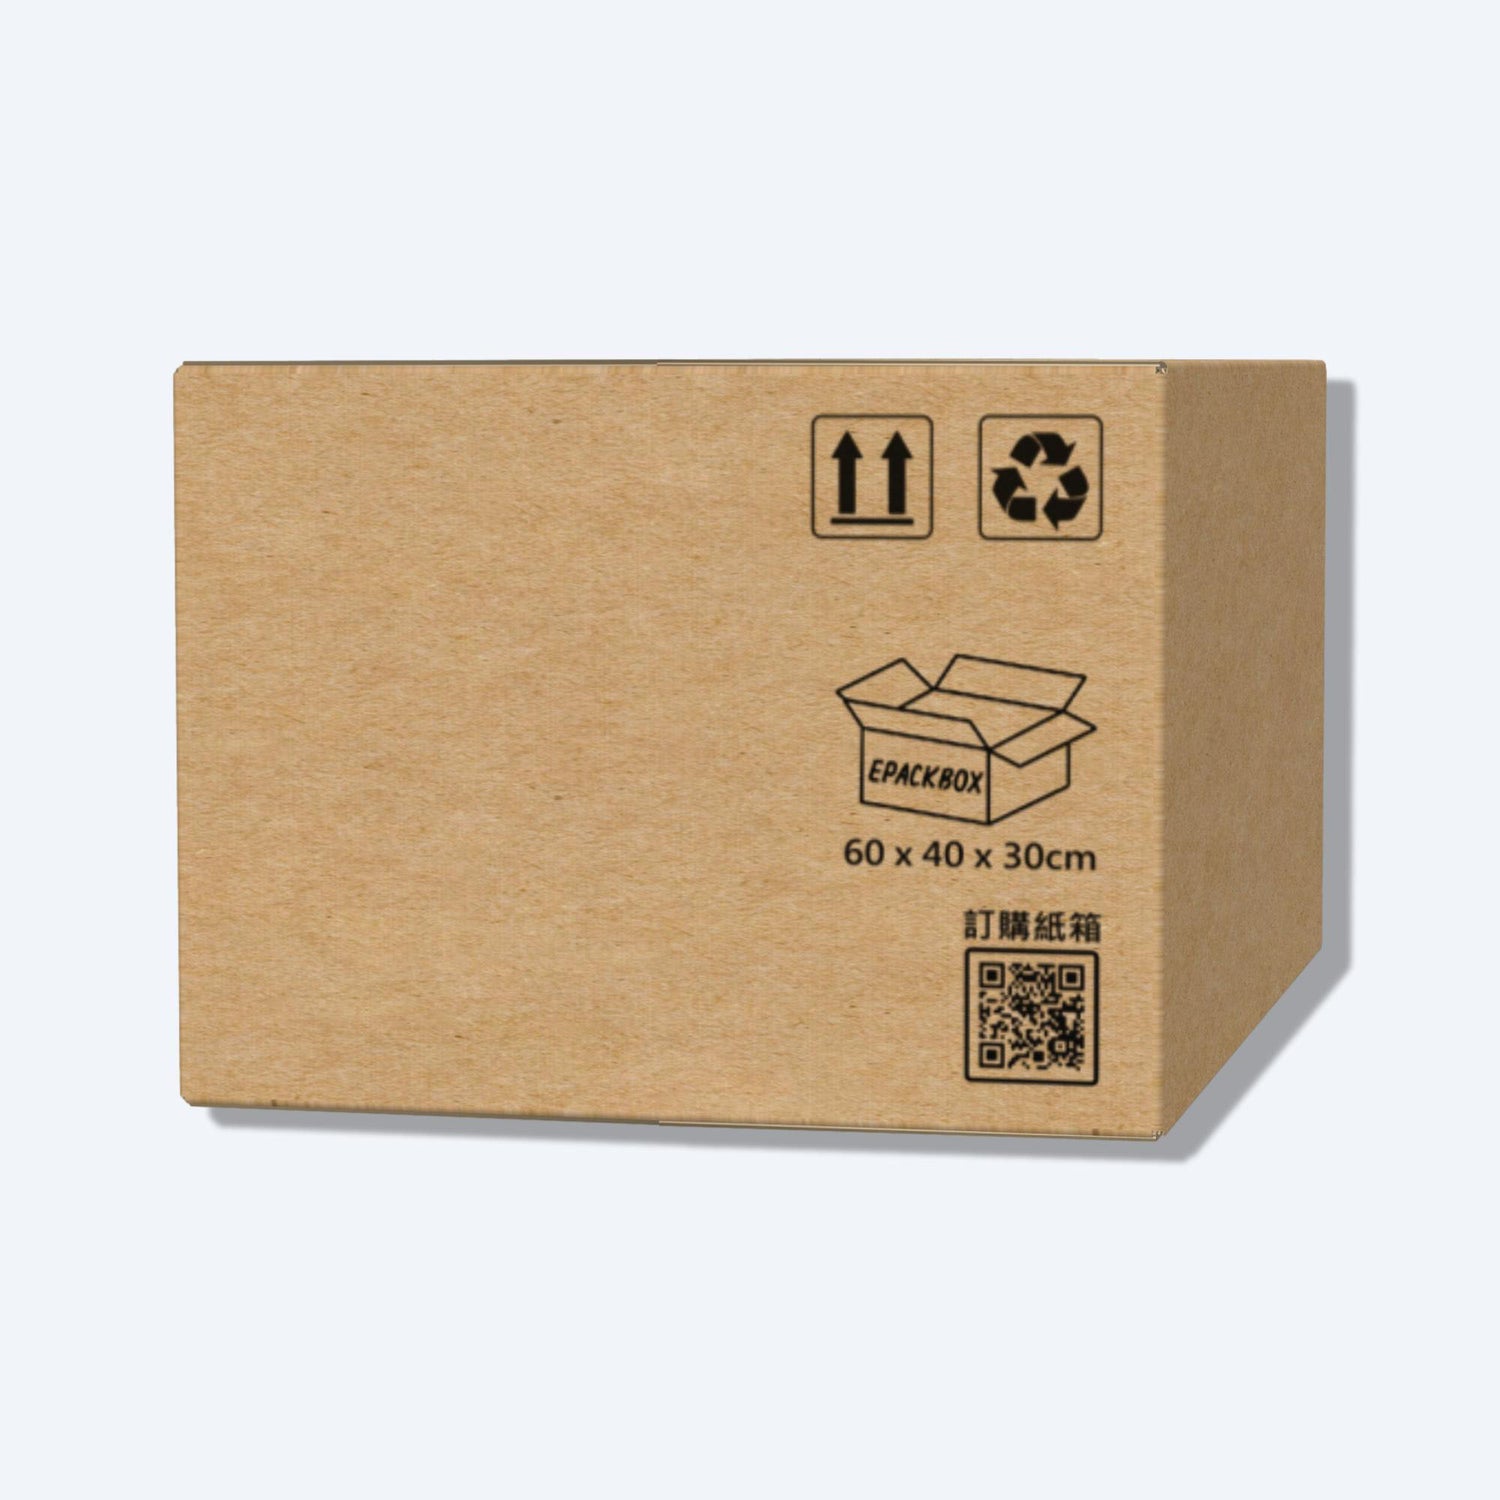 順豐F6s尺寸紙箱展開圖，其尺寸符合順豐速運的包裝標準，展示折疊和組裝方式。